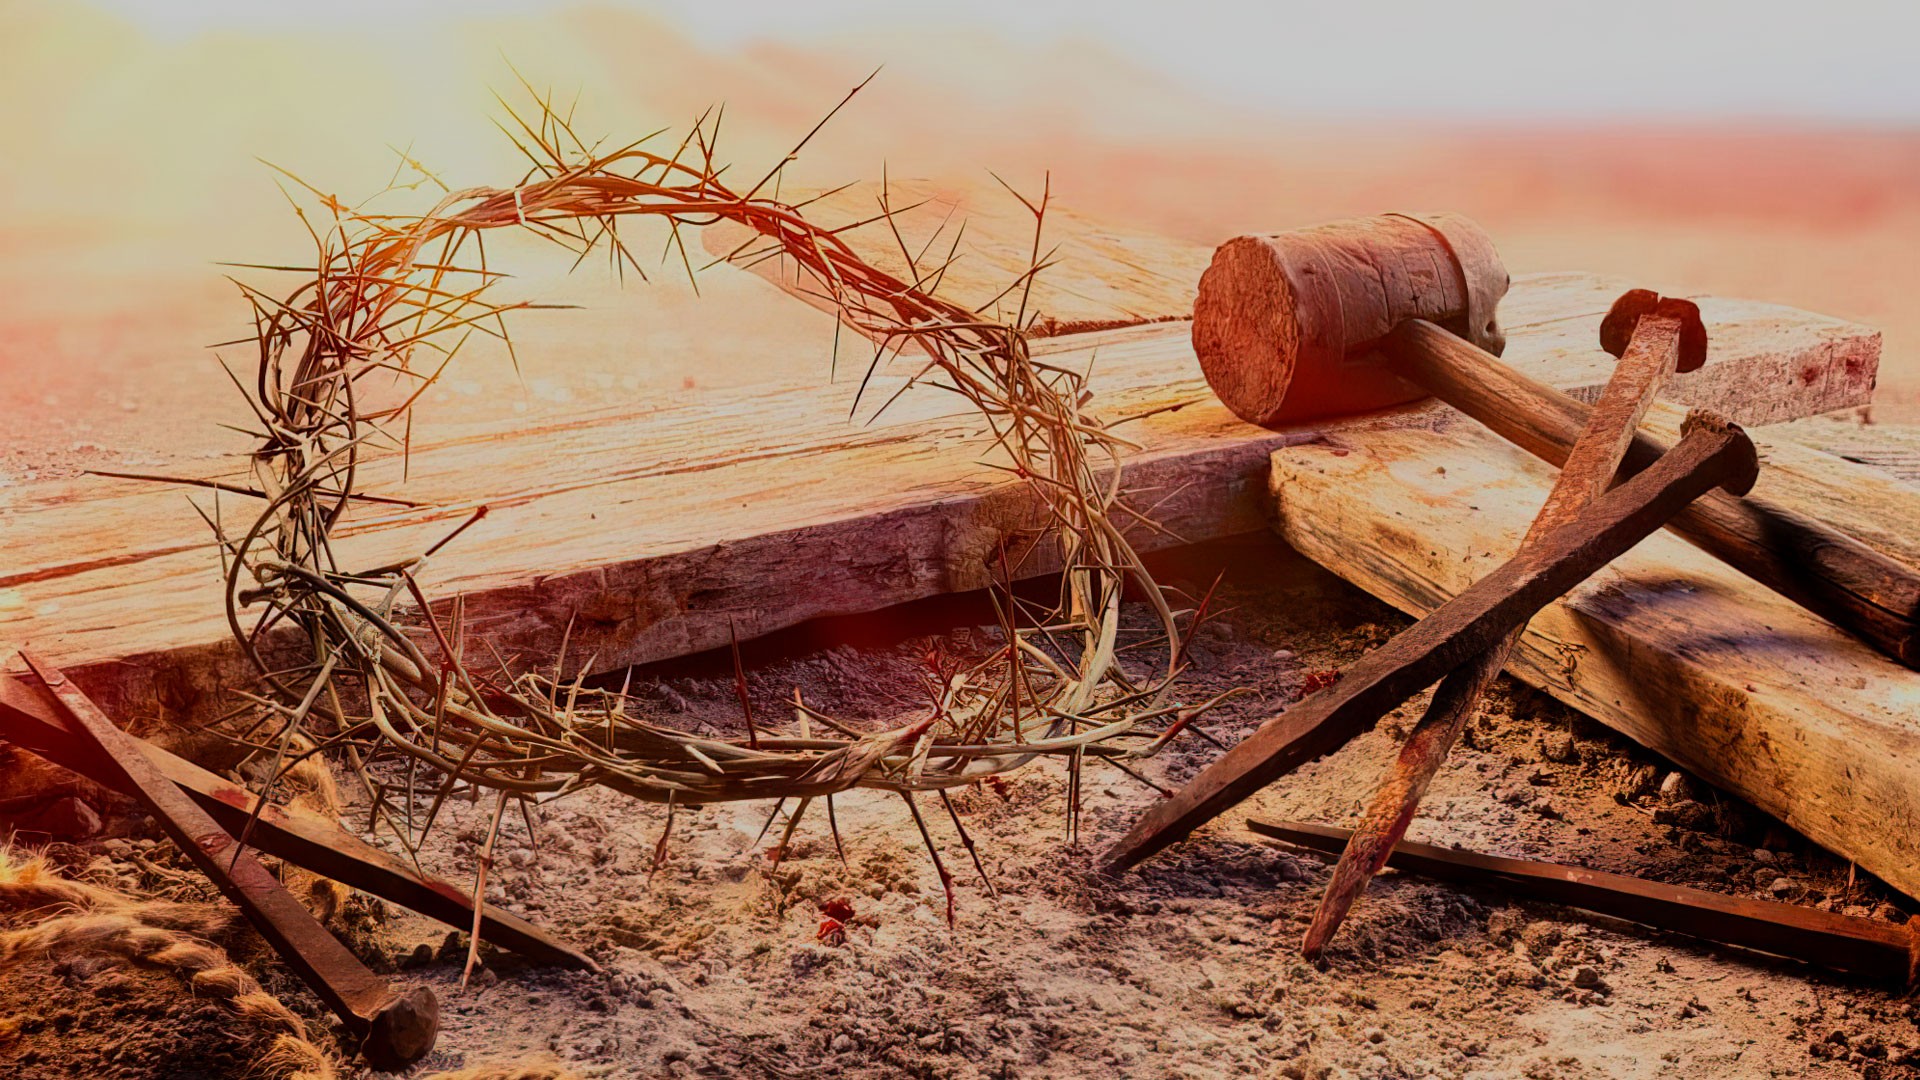 Artículo | El Sacrificio de Cristo y su efecto transformador en nuestra vida diaria